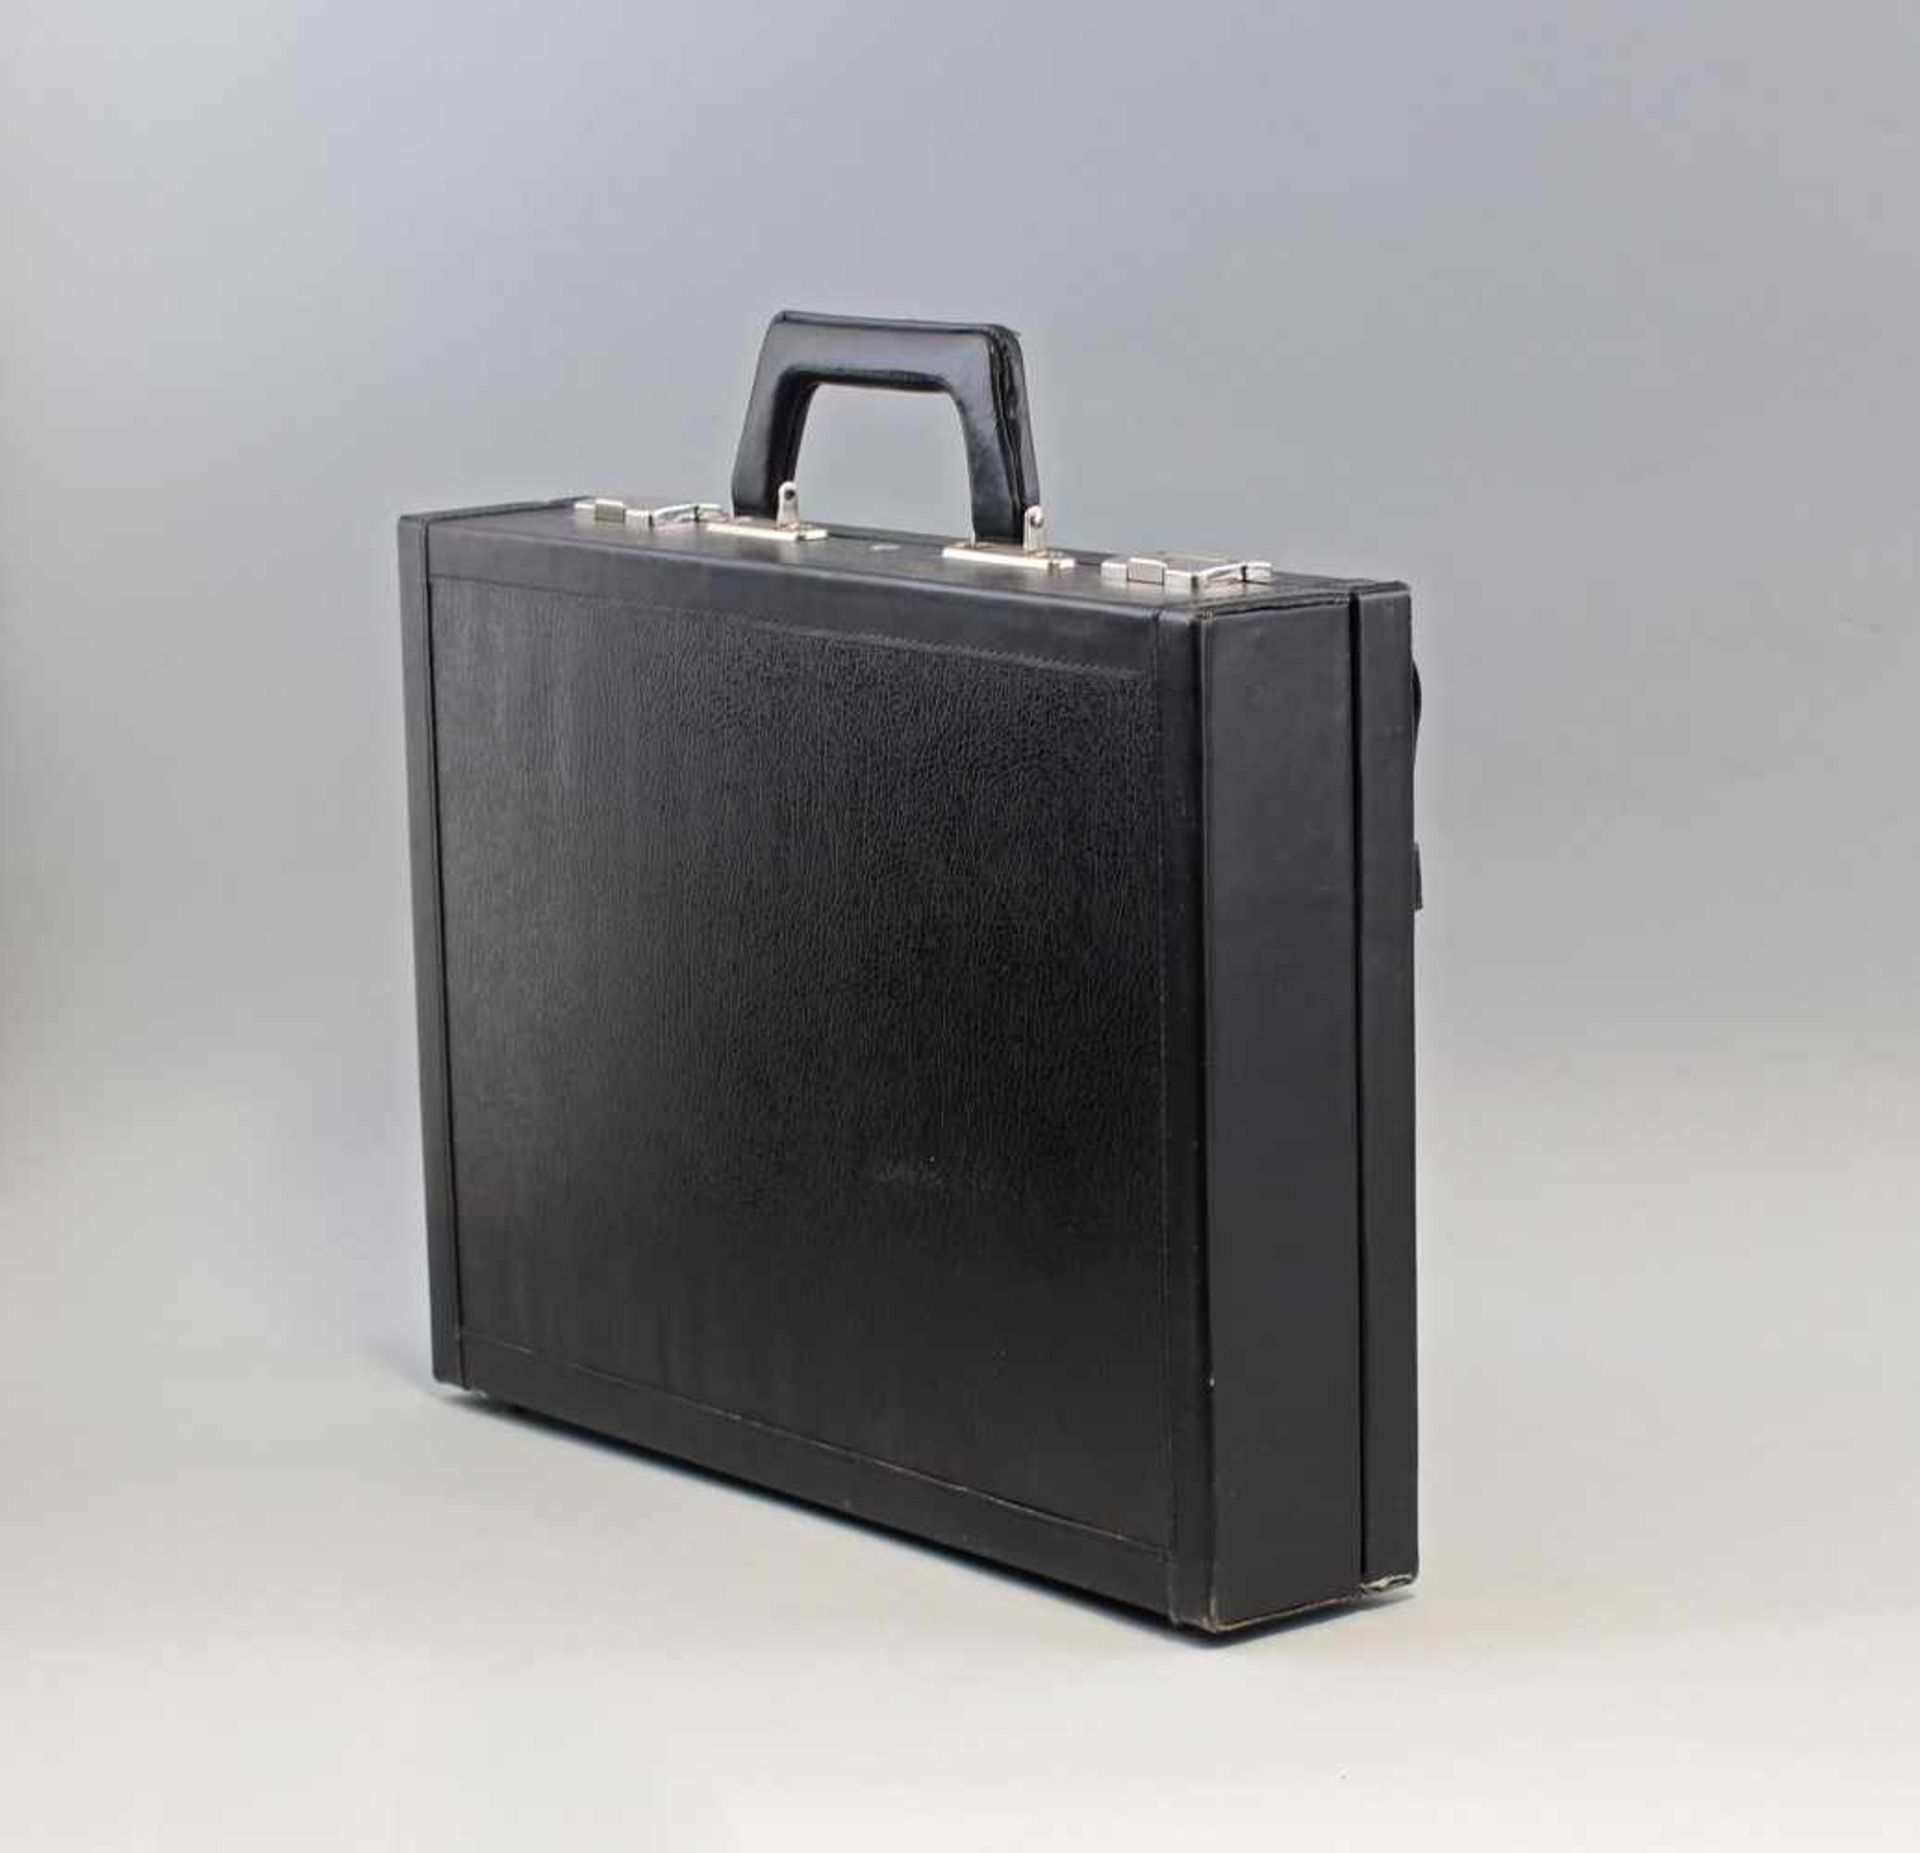 Spionagekoffer / Tarnung T 104 wohl MdI/MfS (DDR, 80er Jahre), schwarzer Koffer mit versteckter - Bild 2 aus 4